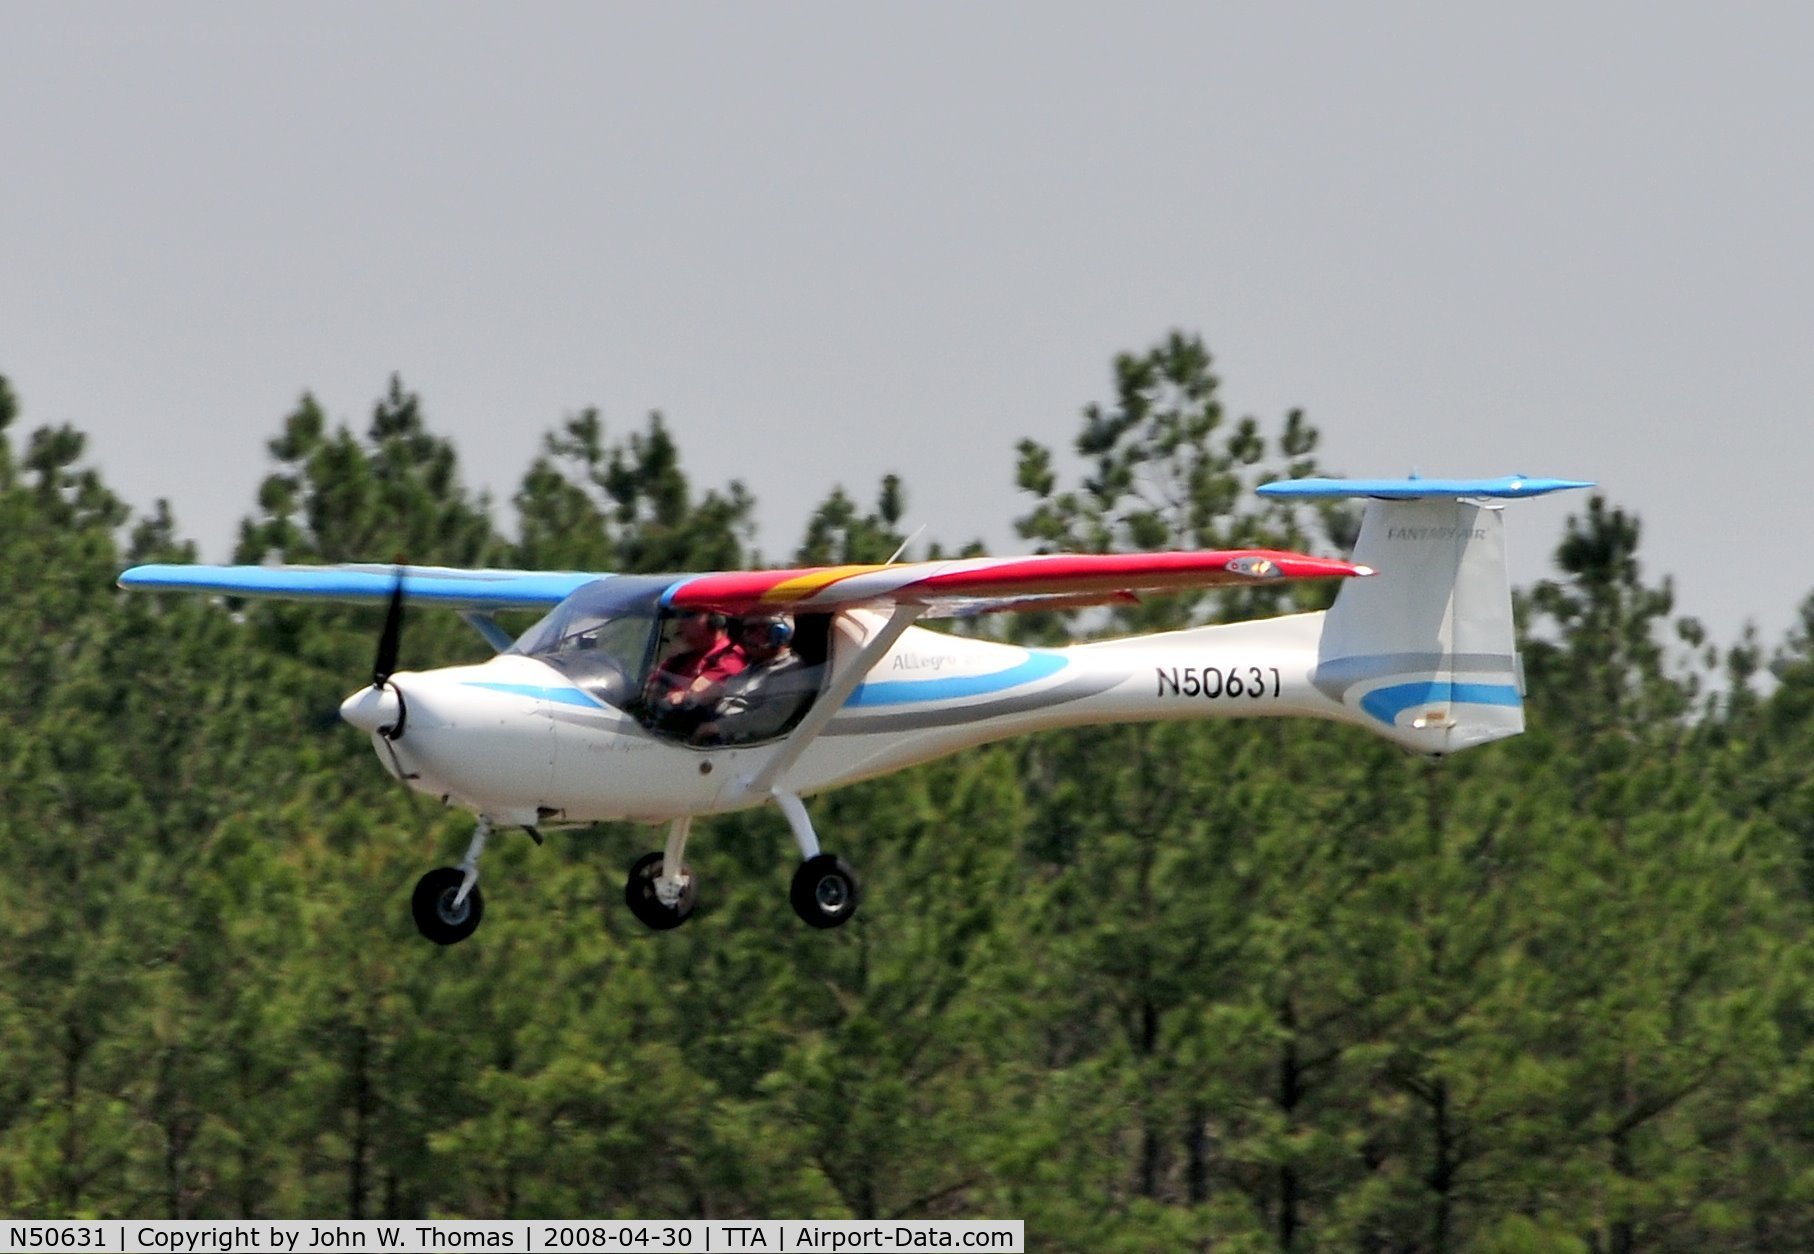 N50631, 2006 Fantasy Air Allegro 2000 C/N 06-227, Departing runway 3